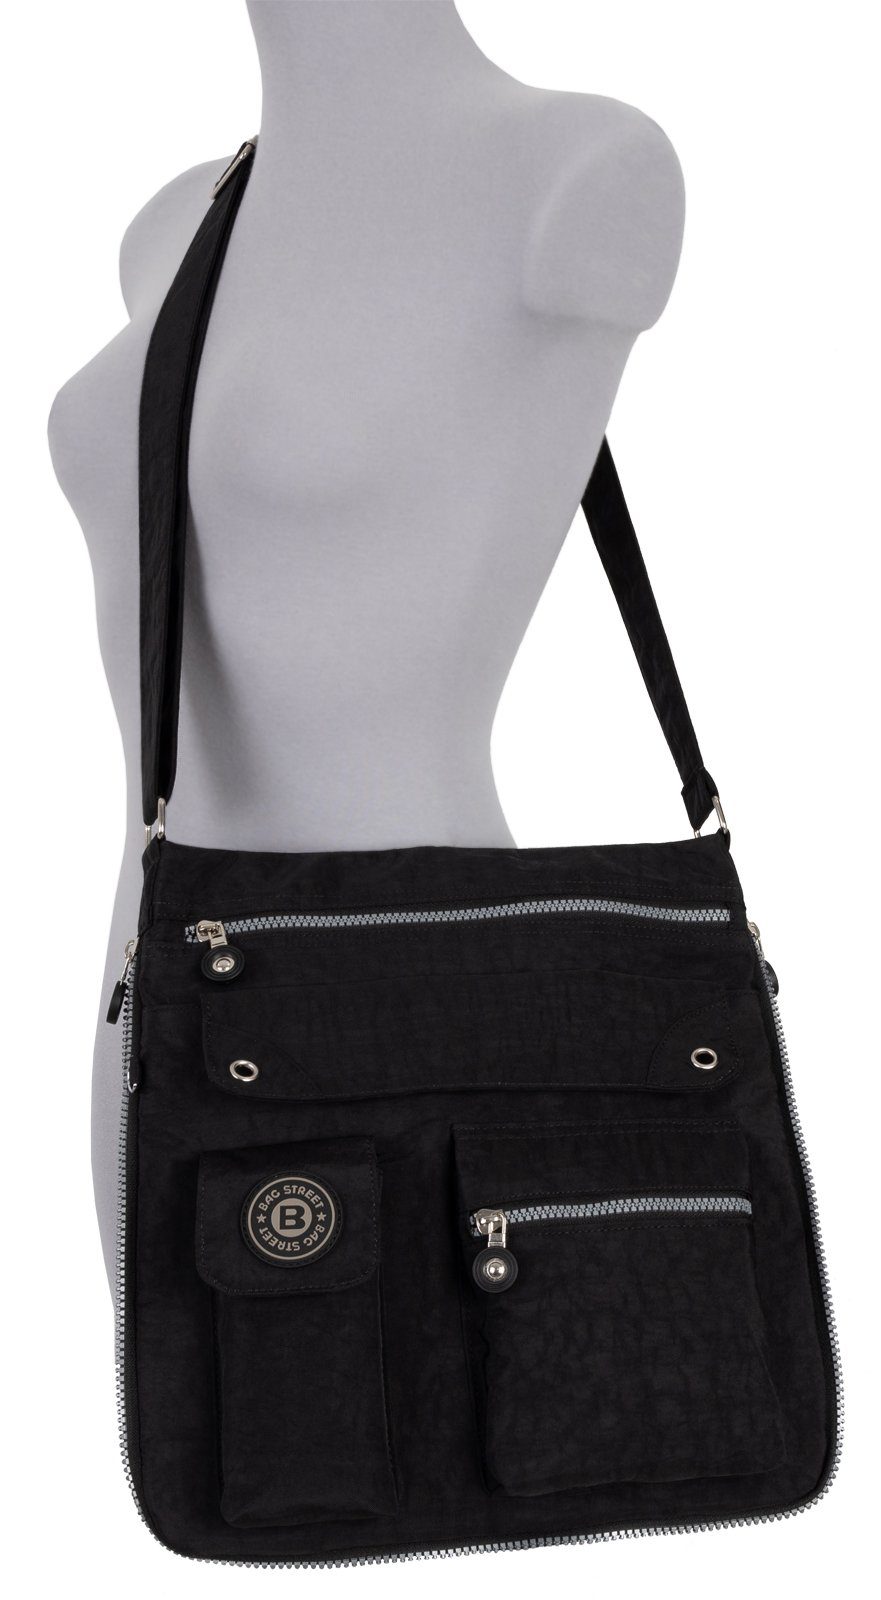 BAG STREET Schlüsseltasche Damentasche Schultertasche, tragbar Schwarz, als Handtasche Umhängetasche Schultertasche Umhängetasche